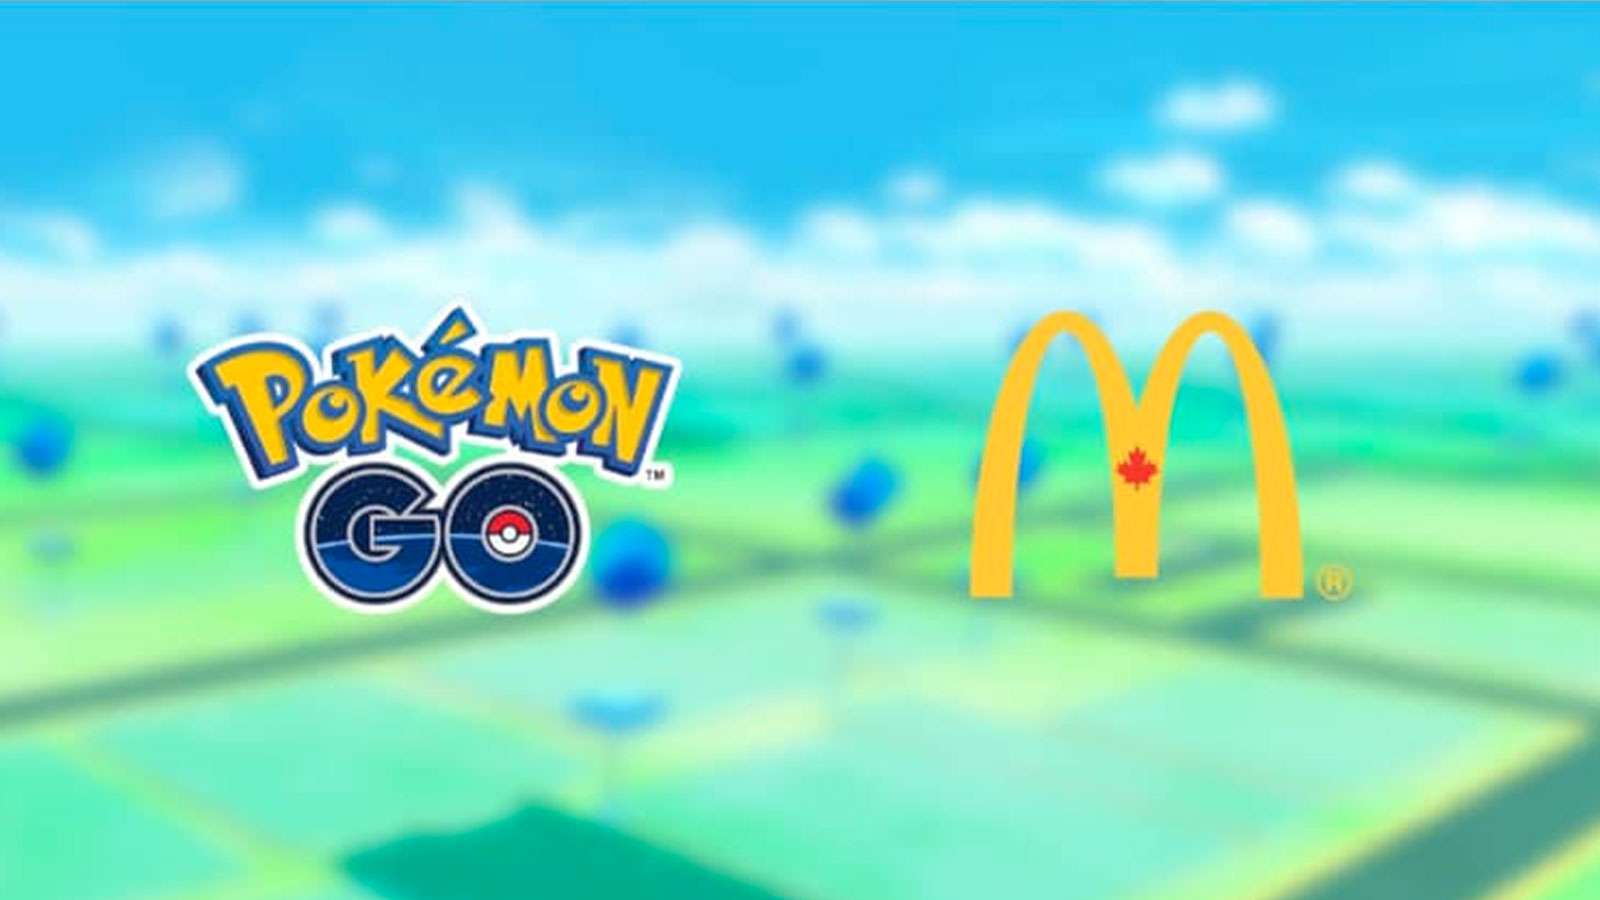 Pokémon Go et McDonald's Canada s'associent